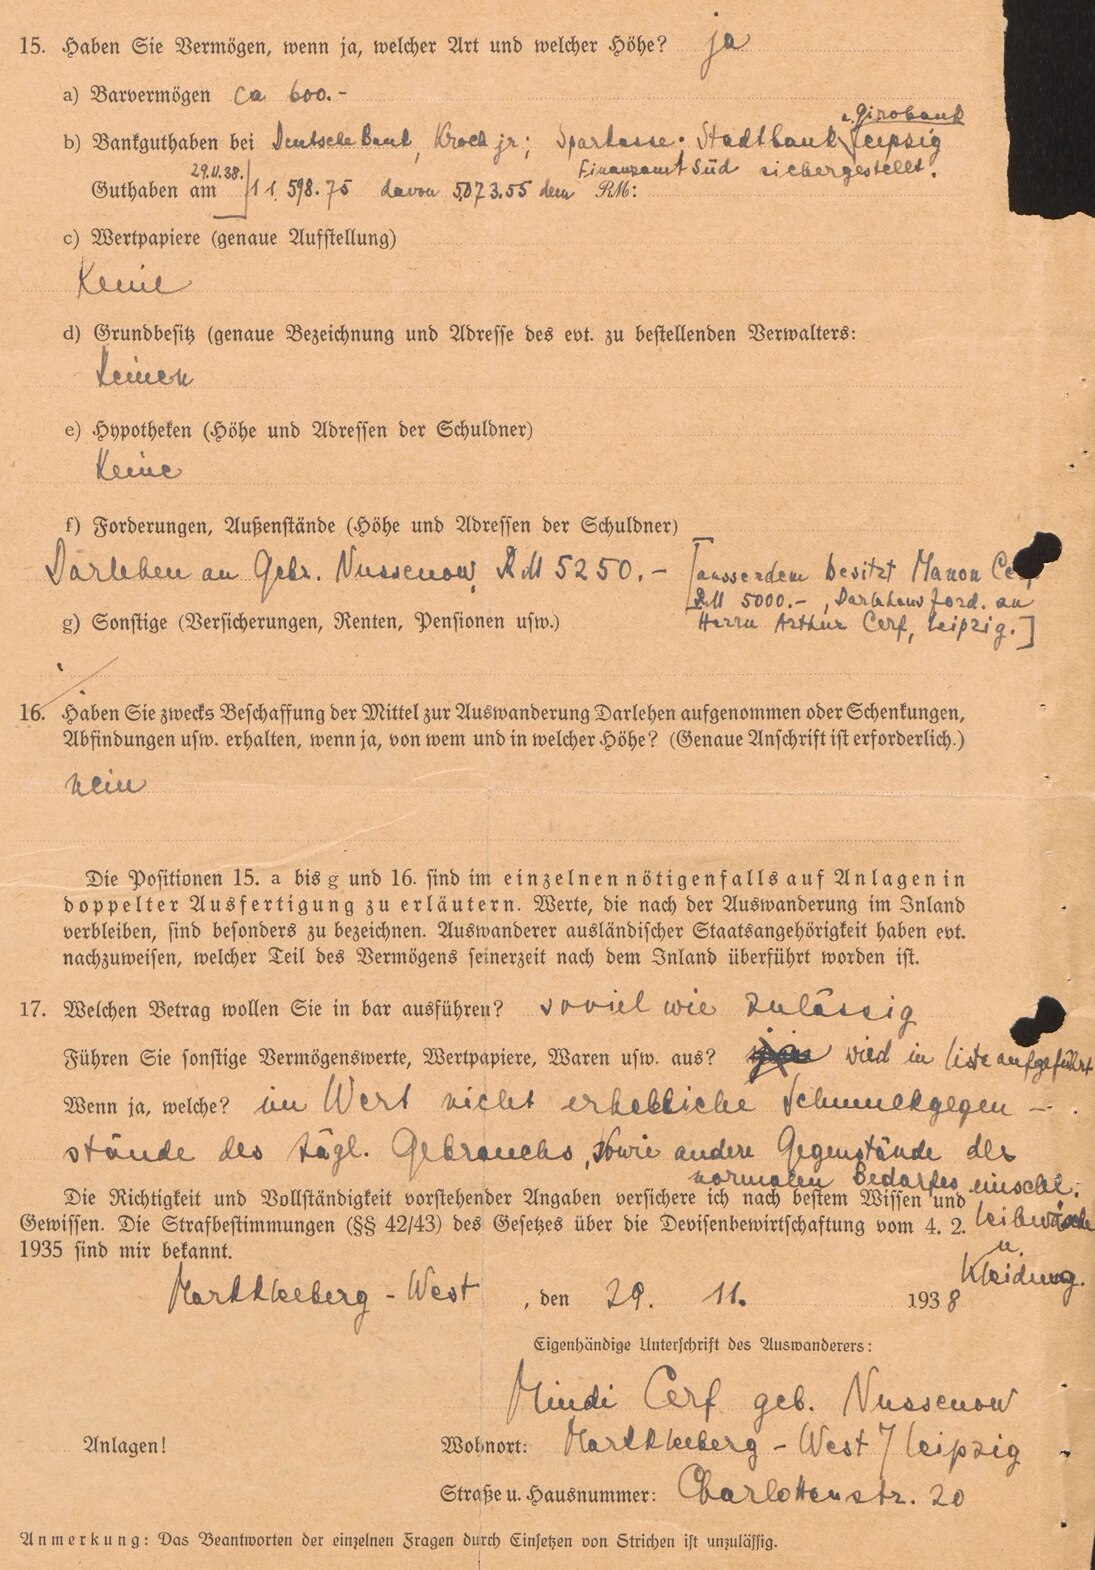 Fragebogen zur Auswanderung von Mindi Cerf und ihrer Tochter für die Finanzbehörden, 29. November 1938 (Rückseite) (SächsStA-L, 20206 Oberfinanzpräsident Leipzig, Nr. 165)